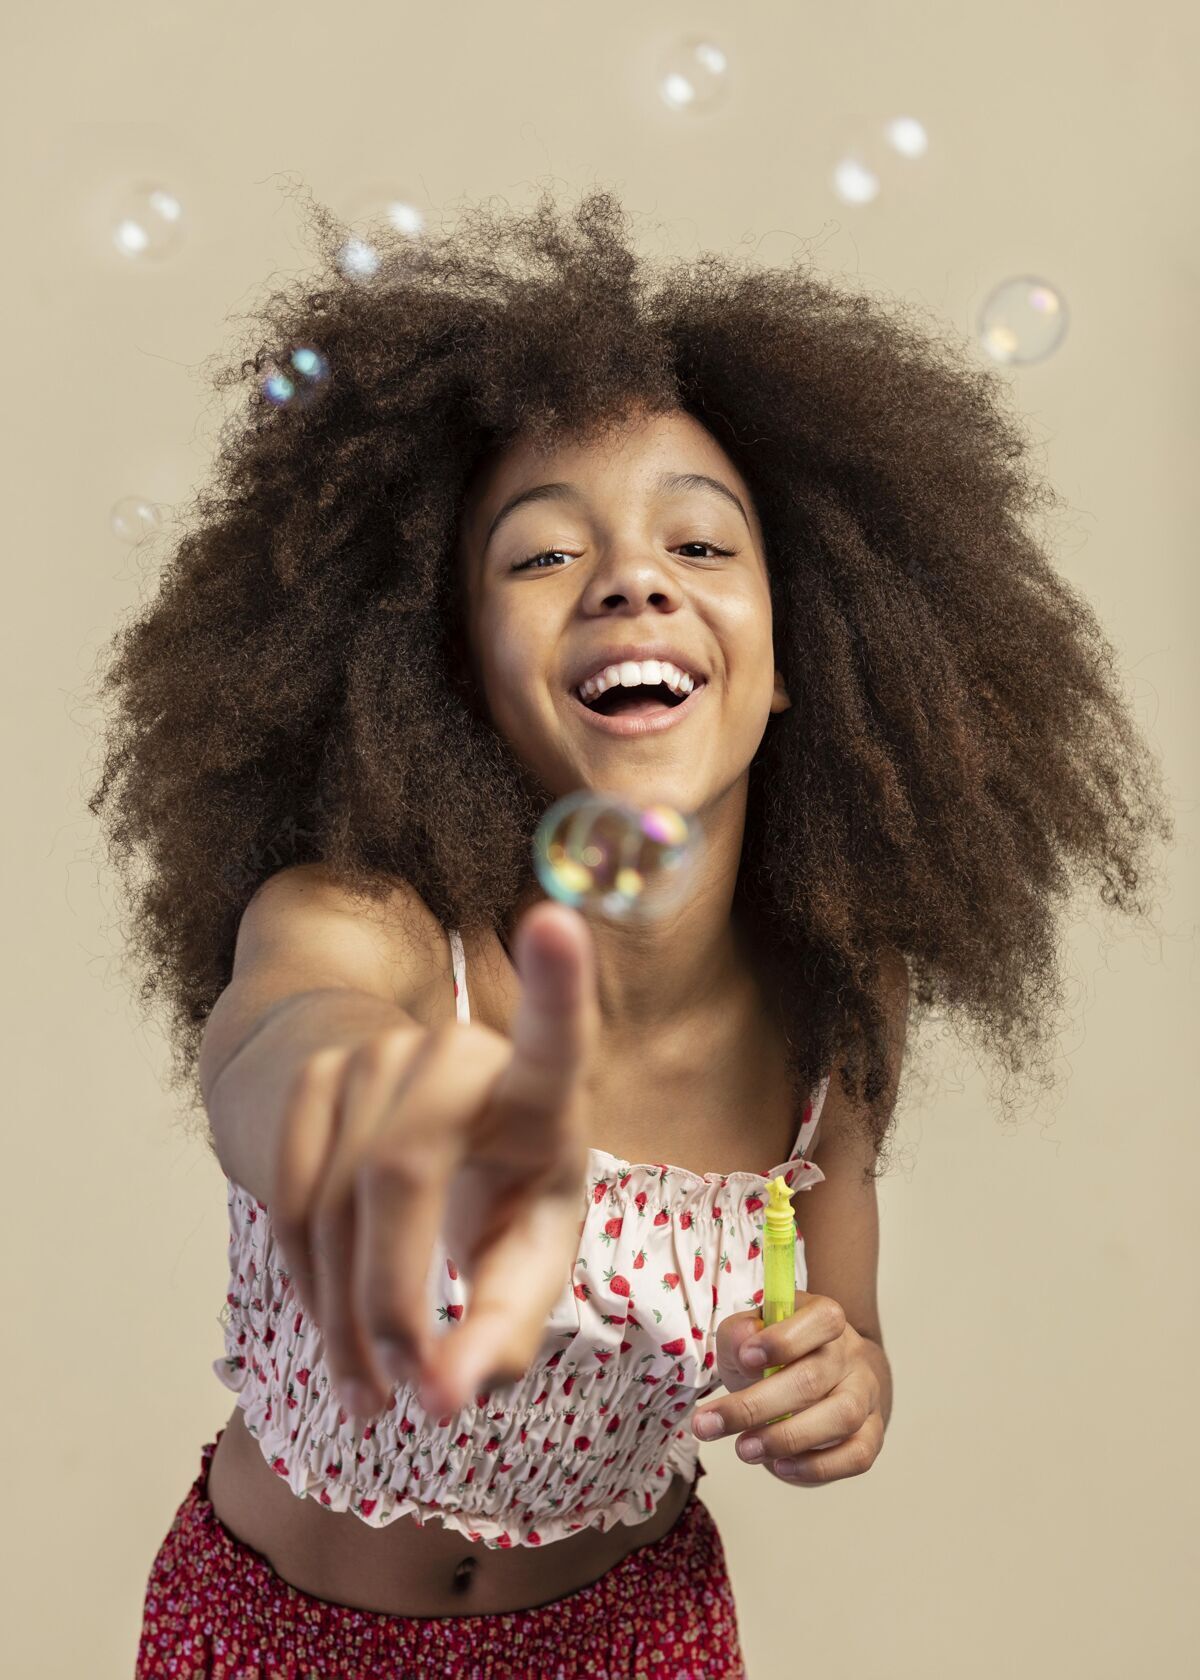 儿童肖像年轻可爱的女孩在玩肥皂泡时摆姿势的画像年轻可爱垂直